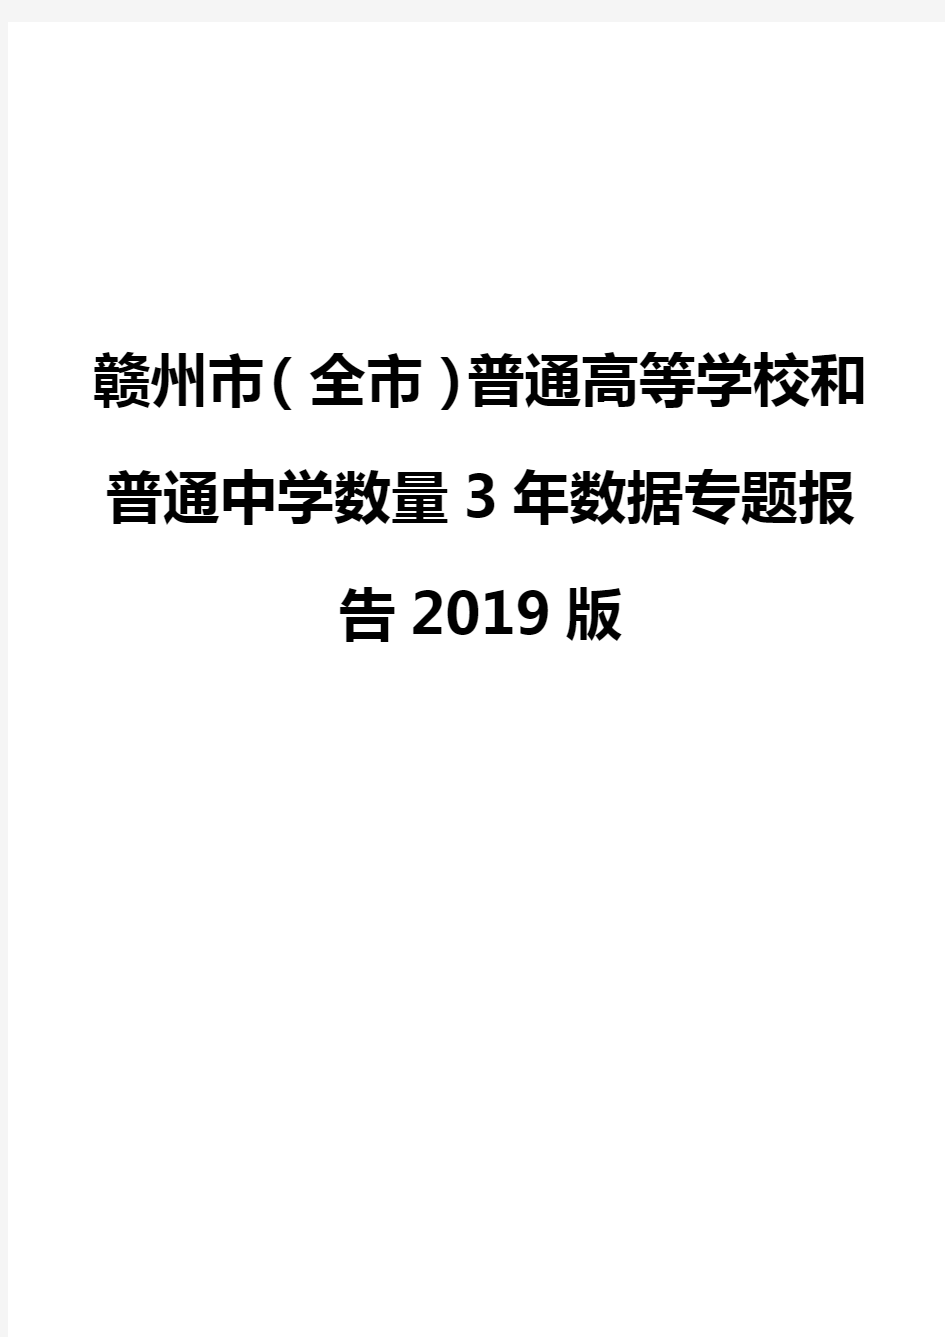 赣州市(全市)普通高等学校和普通中学数量3年数据专题报告2019版